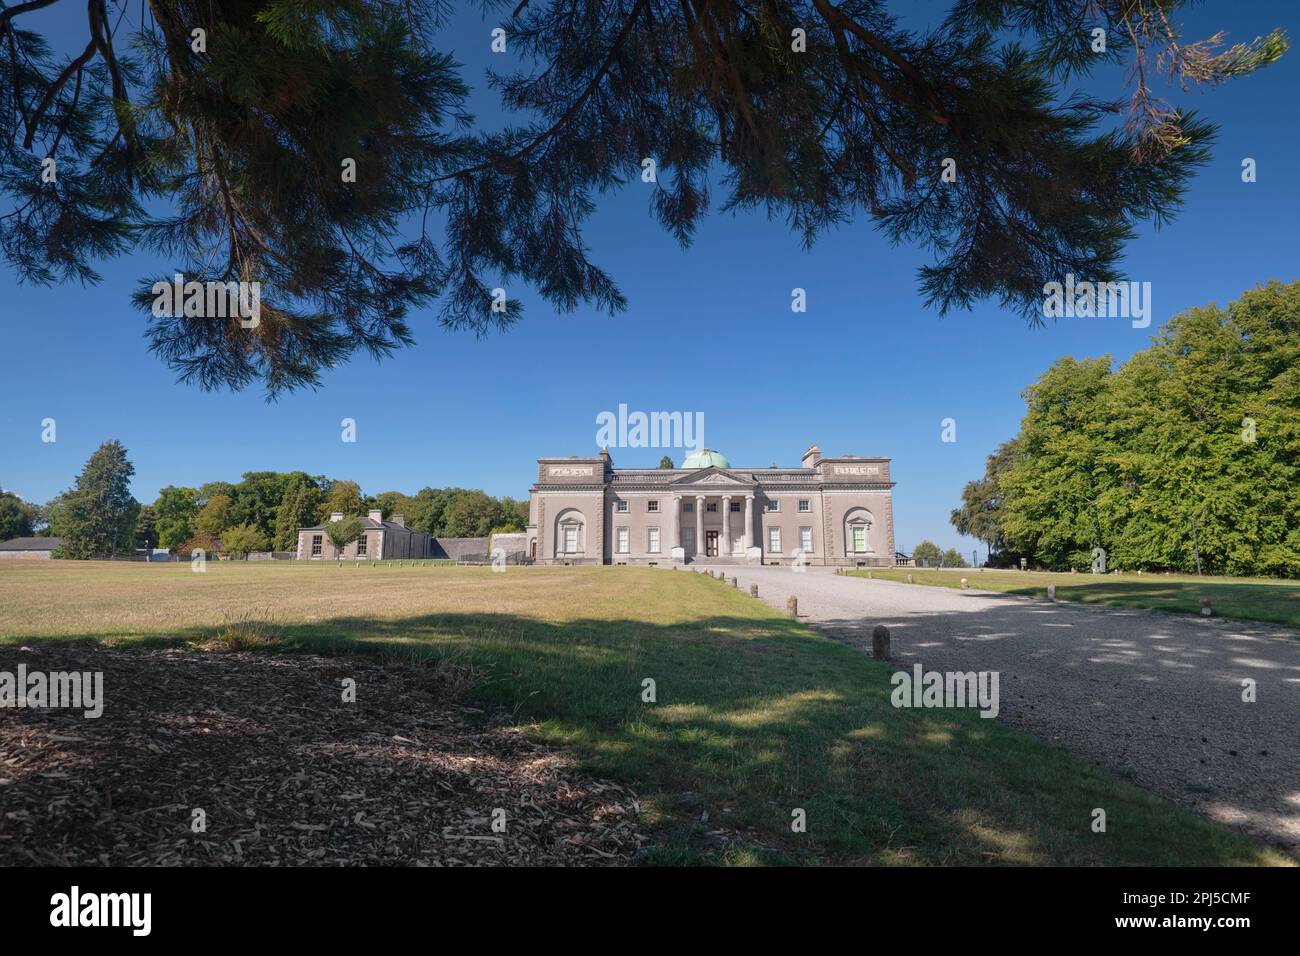 Irland, County Laois, Emo Court, die Fassade des Hauses, eingerahmt von überhängenden Ästen, ist Emo Court ein typisch neoklassizistisches Herrenhaus Stockfoto